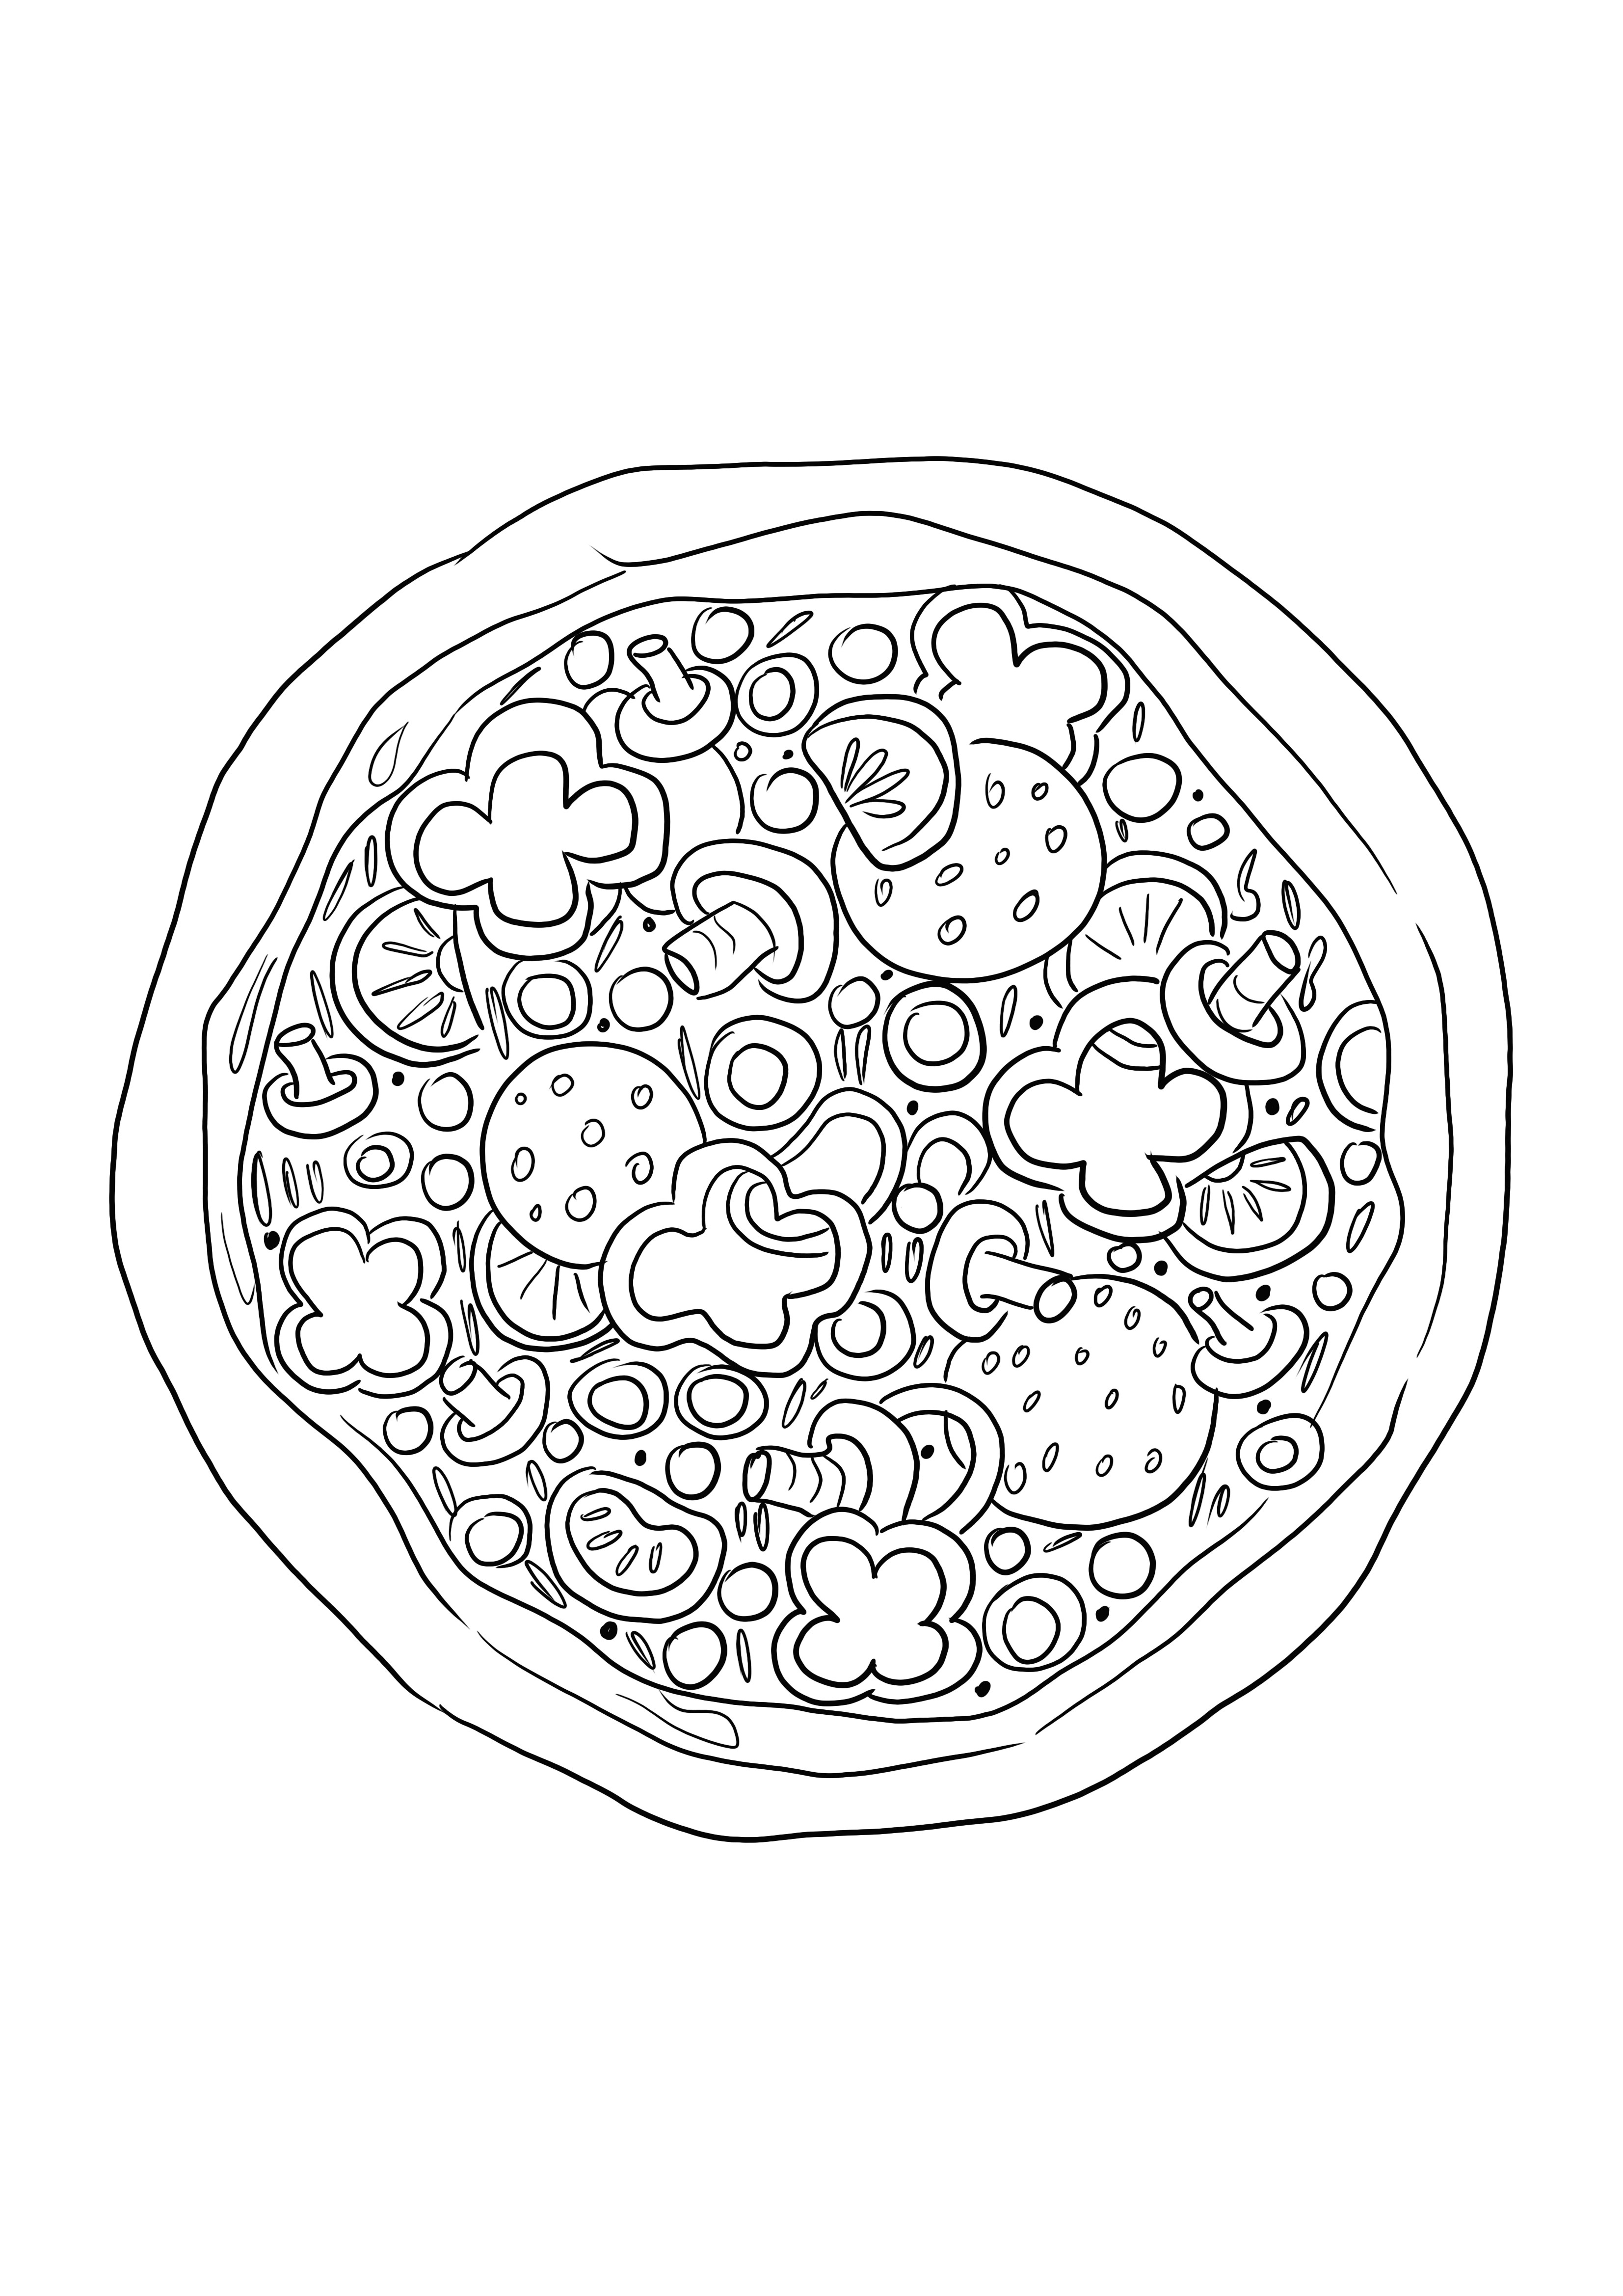 Immagine da colorare della pizza per i bambini da colorare facilmente e conoscere il cibo